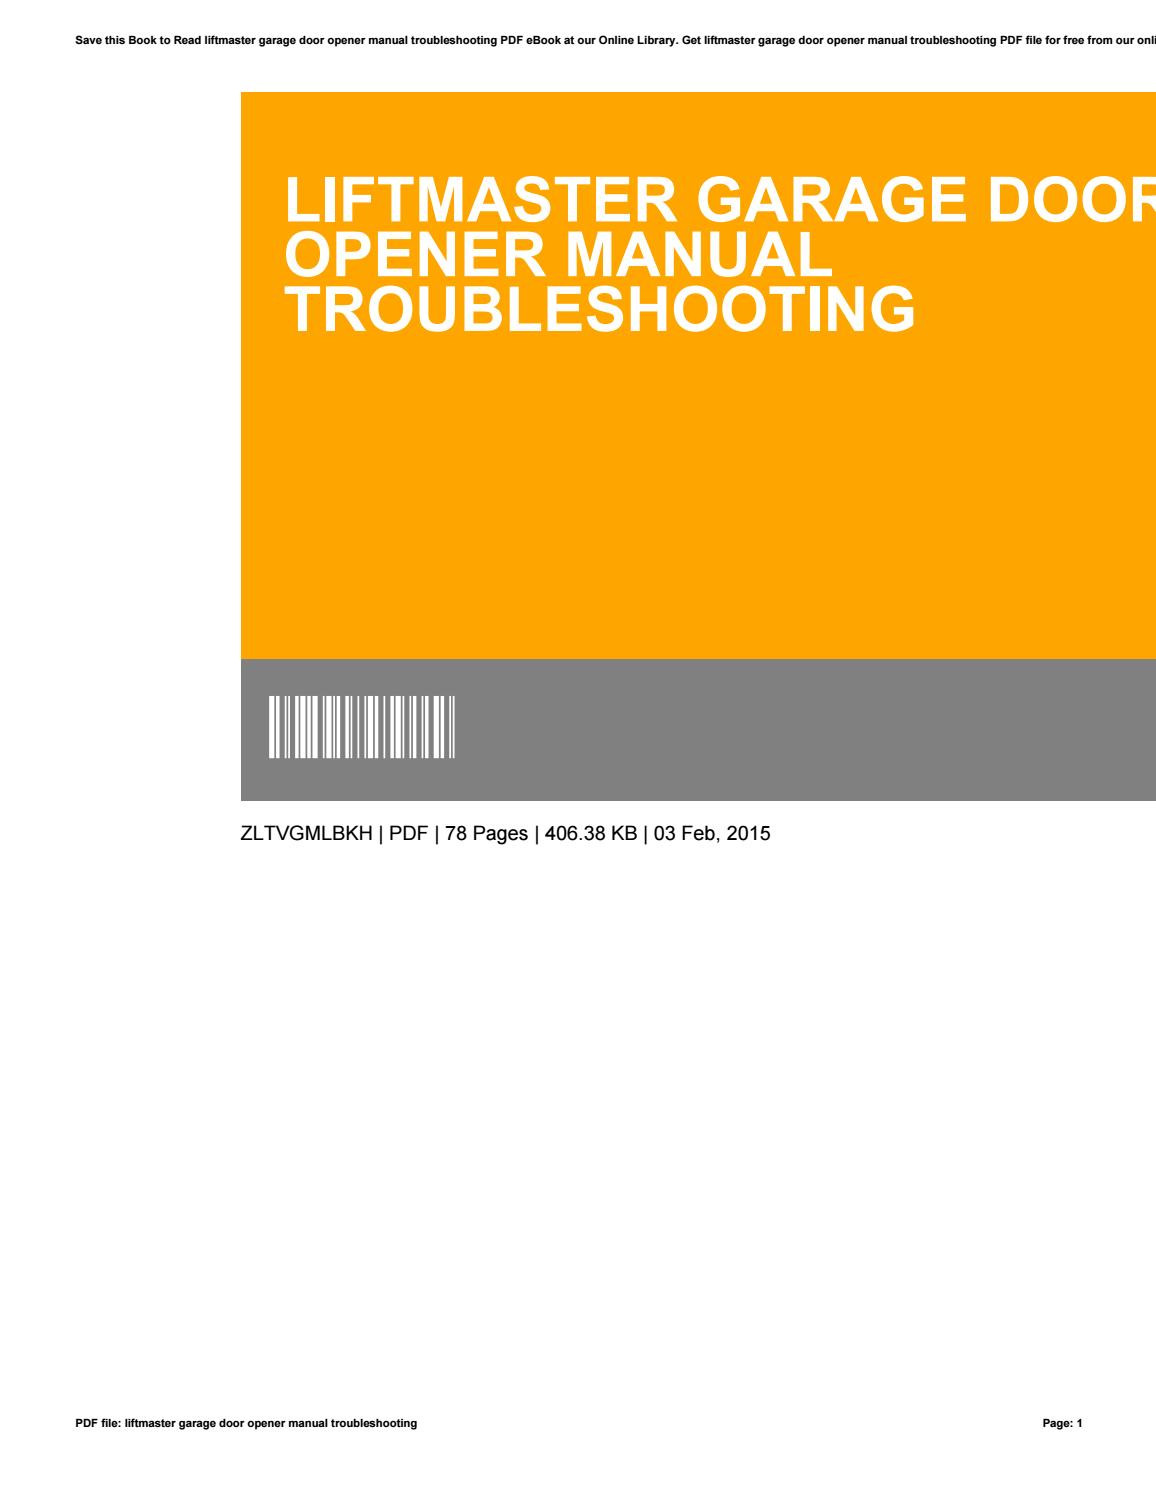 Liftmaster Garage Door Troubleshooting
 Liftmaster garage door opener manual troubleshooting by